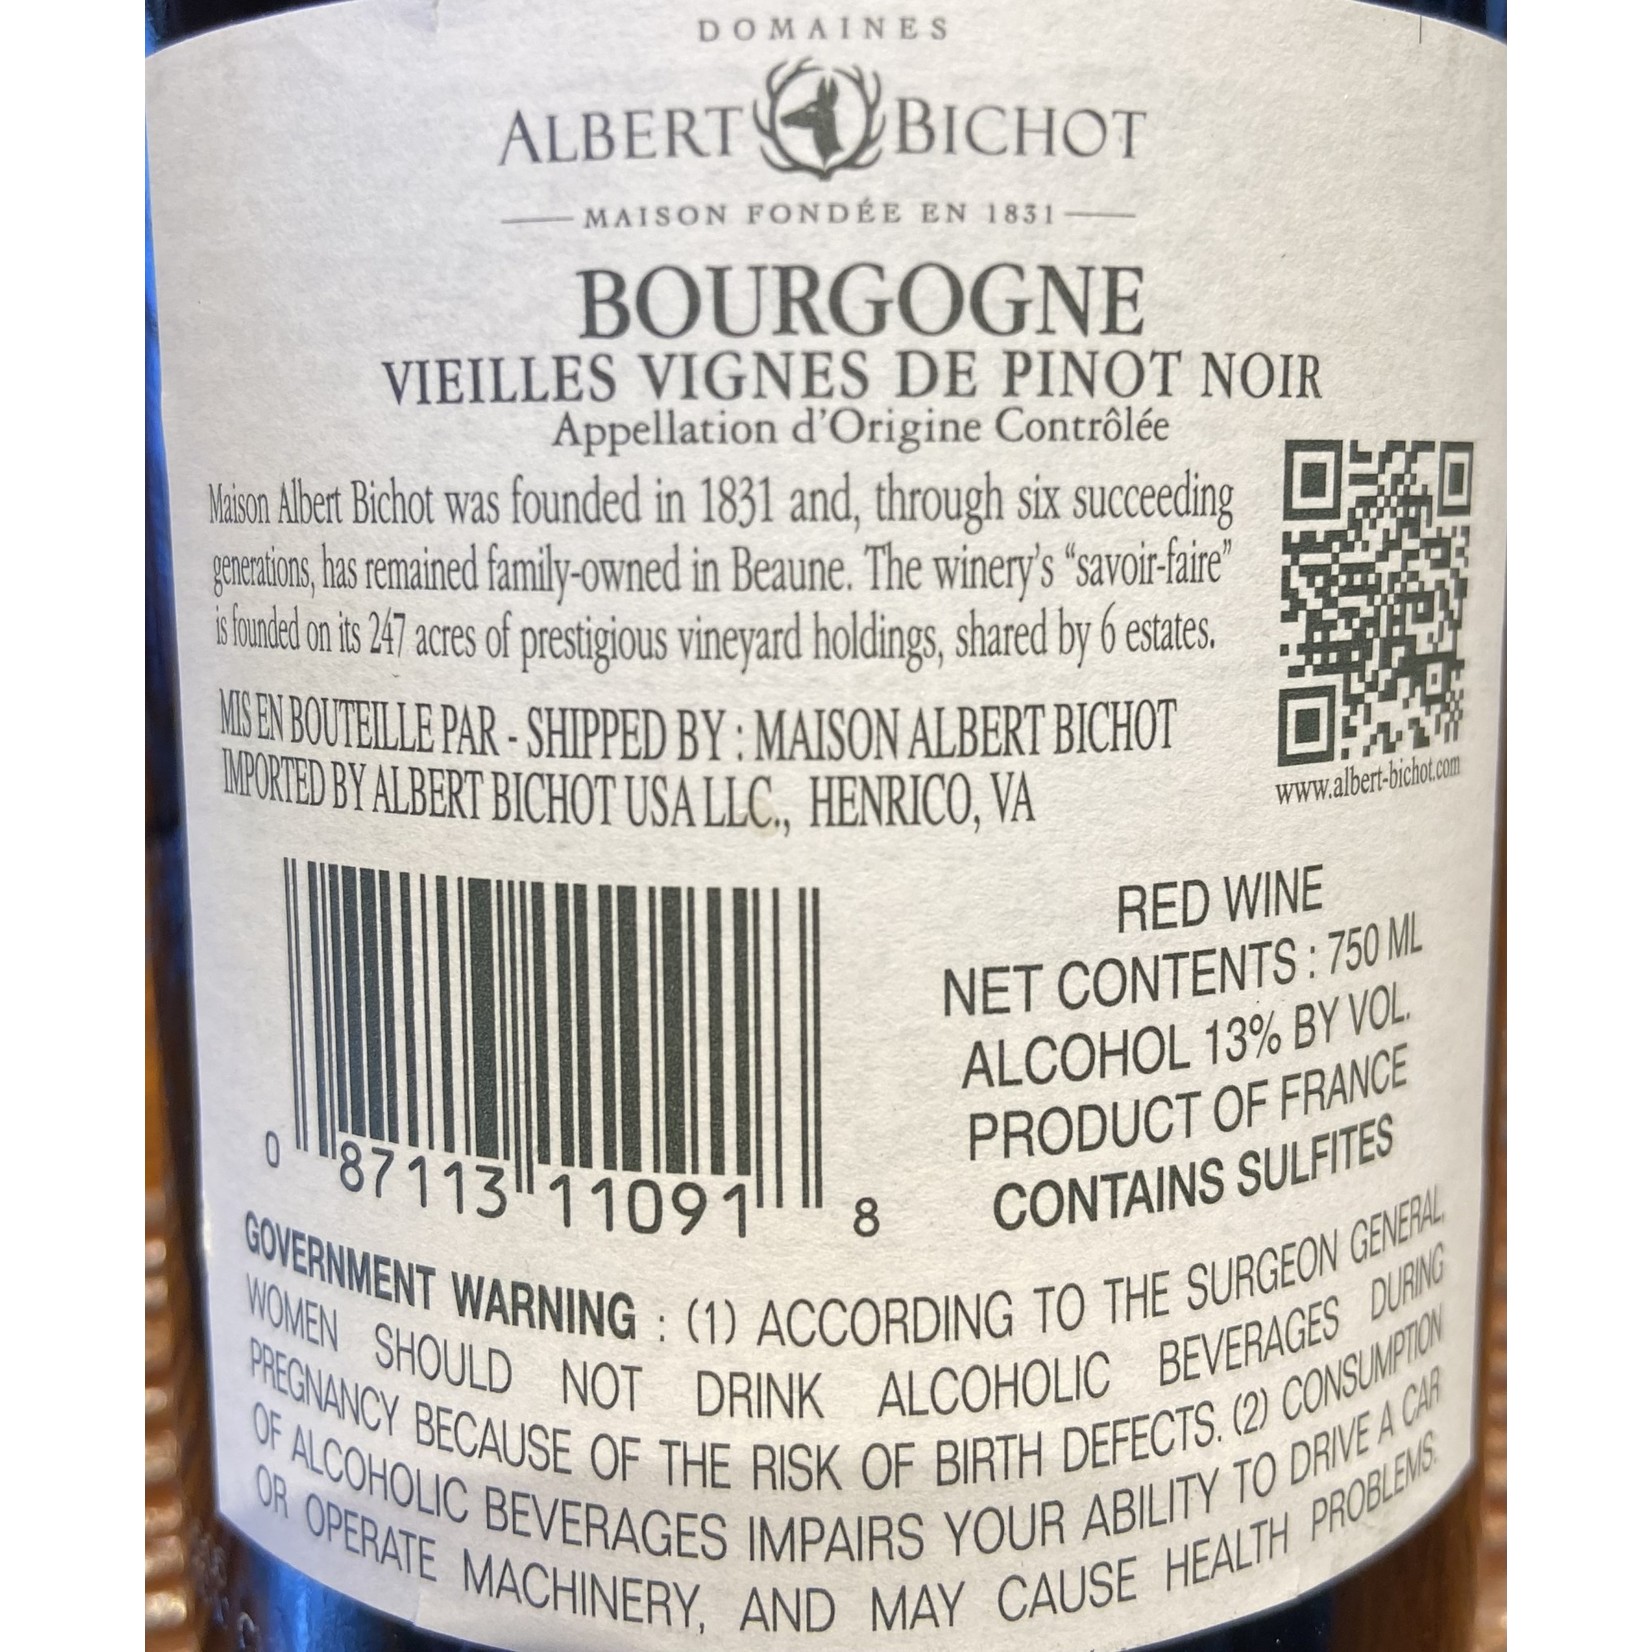 Albert Bichot Vieilles Vignes de Pinot Noir, Burgundy, France 2019